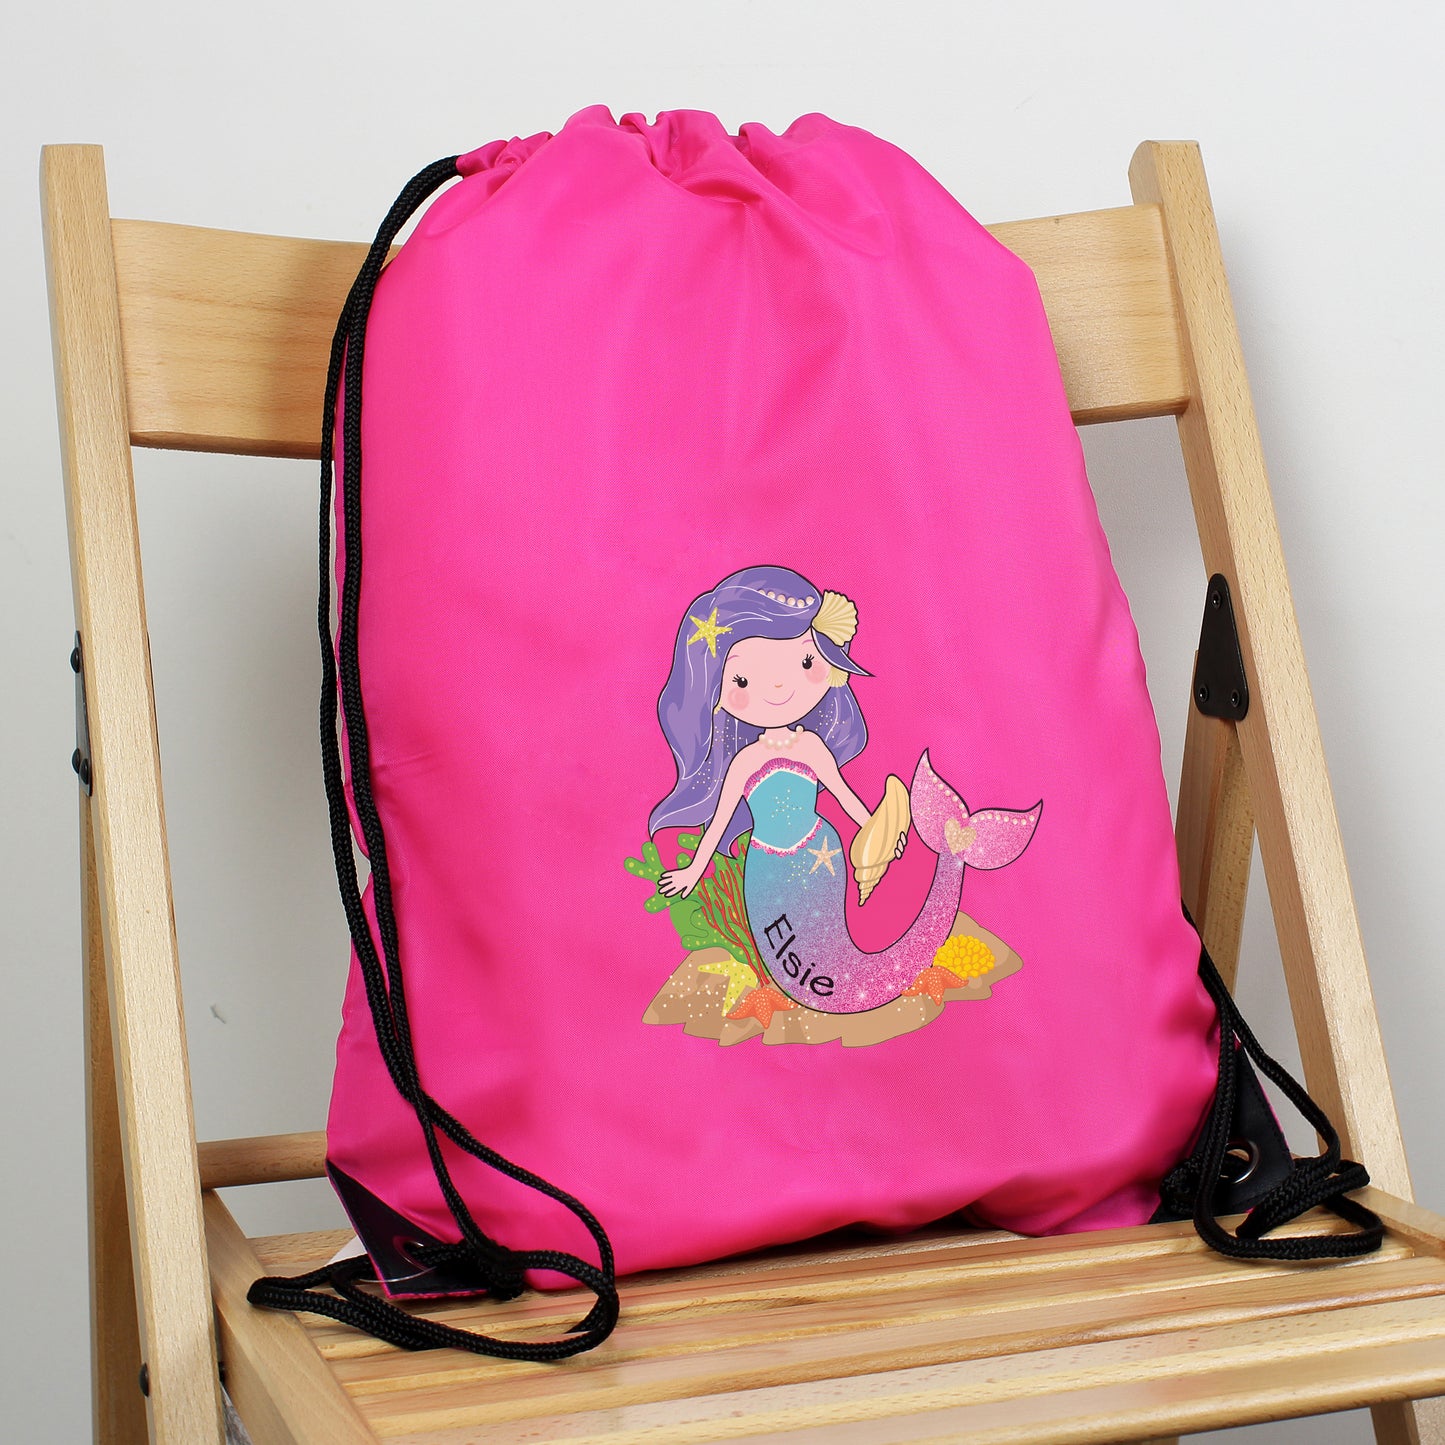 Personalised Mermaid Pink Swim Bag - Personalise It!